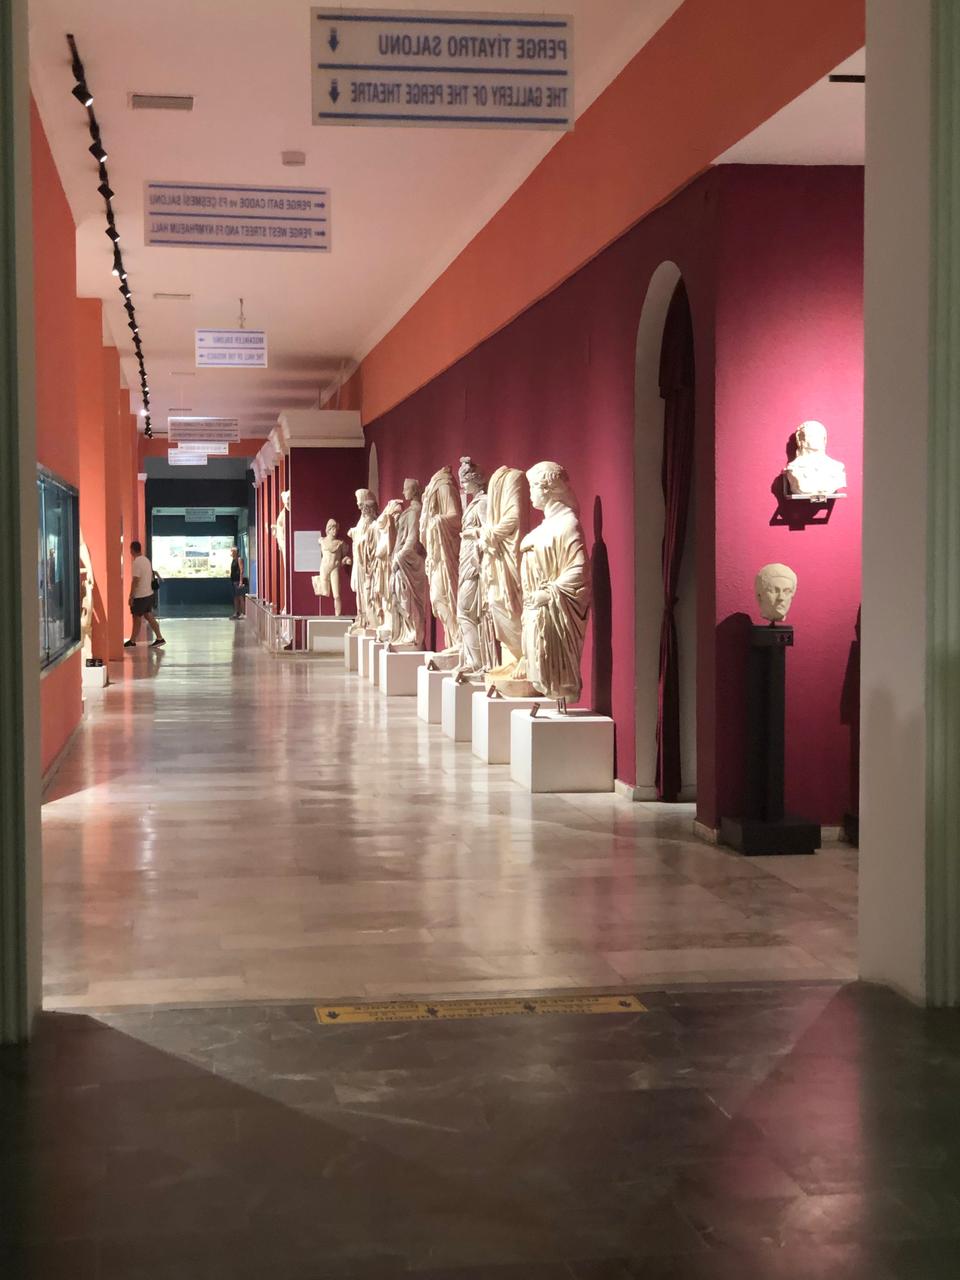 قاعة عرض من ثلاثة عشر صالة يضمّها متحف أنطاليا وتحوي تماثيل وهياكل ومجسمات من الحضارتين الرومانية والبيزنطية